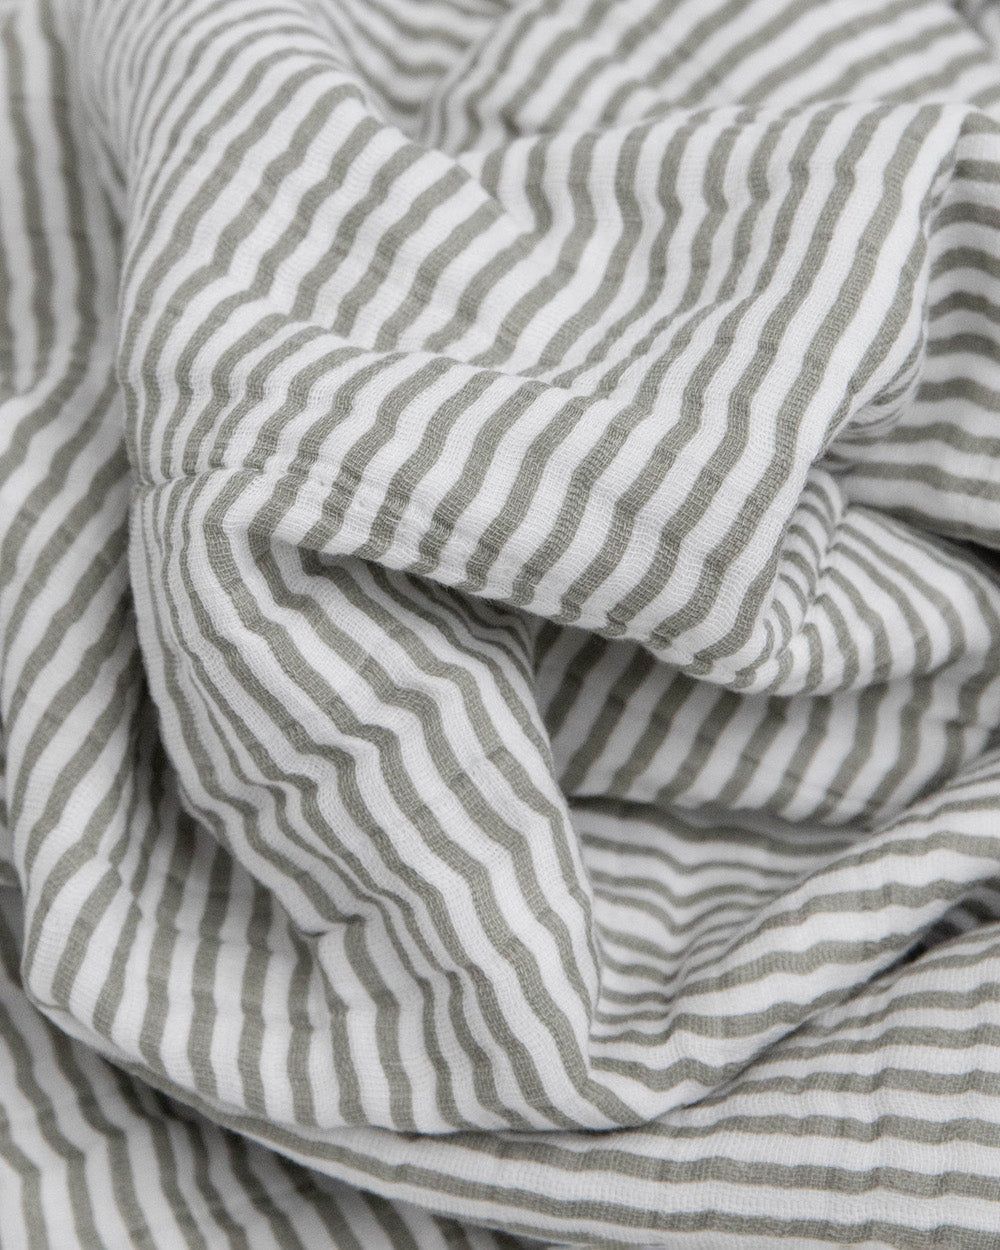 Little Unicorn Cotton Muslin Baby Quilt | Grey Stripe